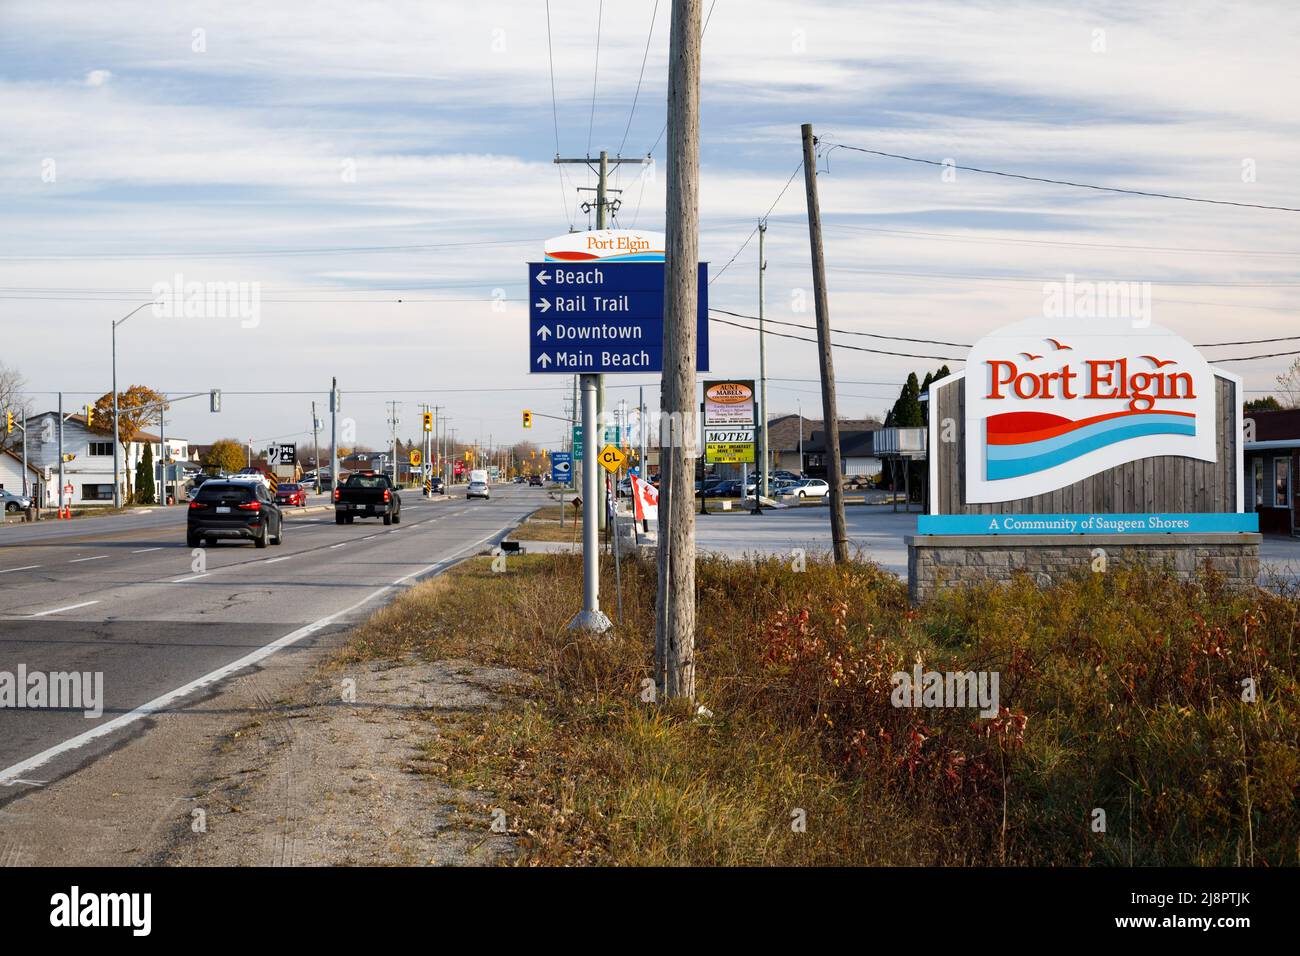 Das Gateway-Schild für die Gemeinde Port Elgin in Saugeen Shores, Bruce County, Ontario, Kanada. Stockfoto